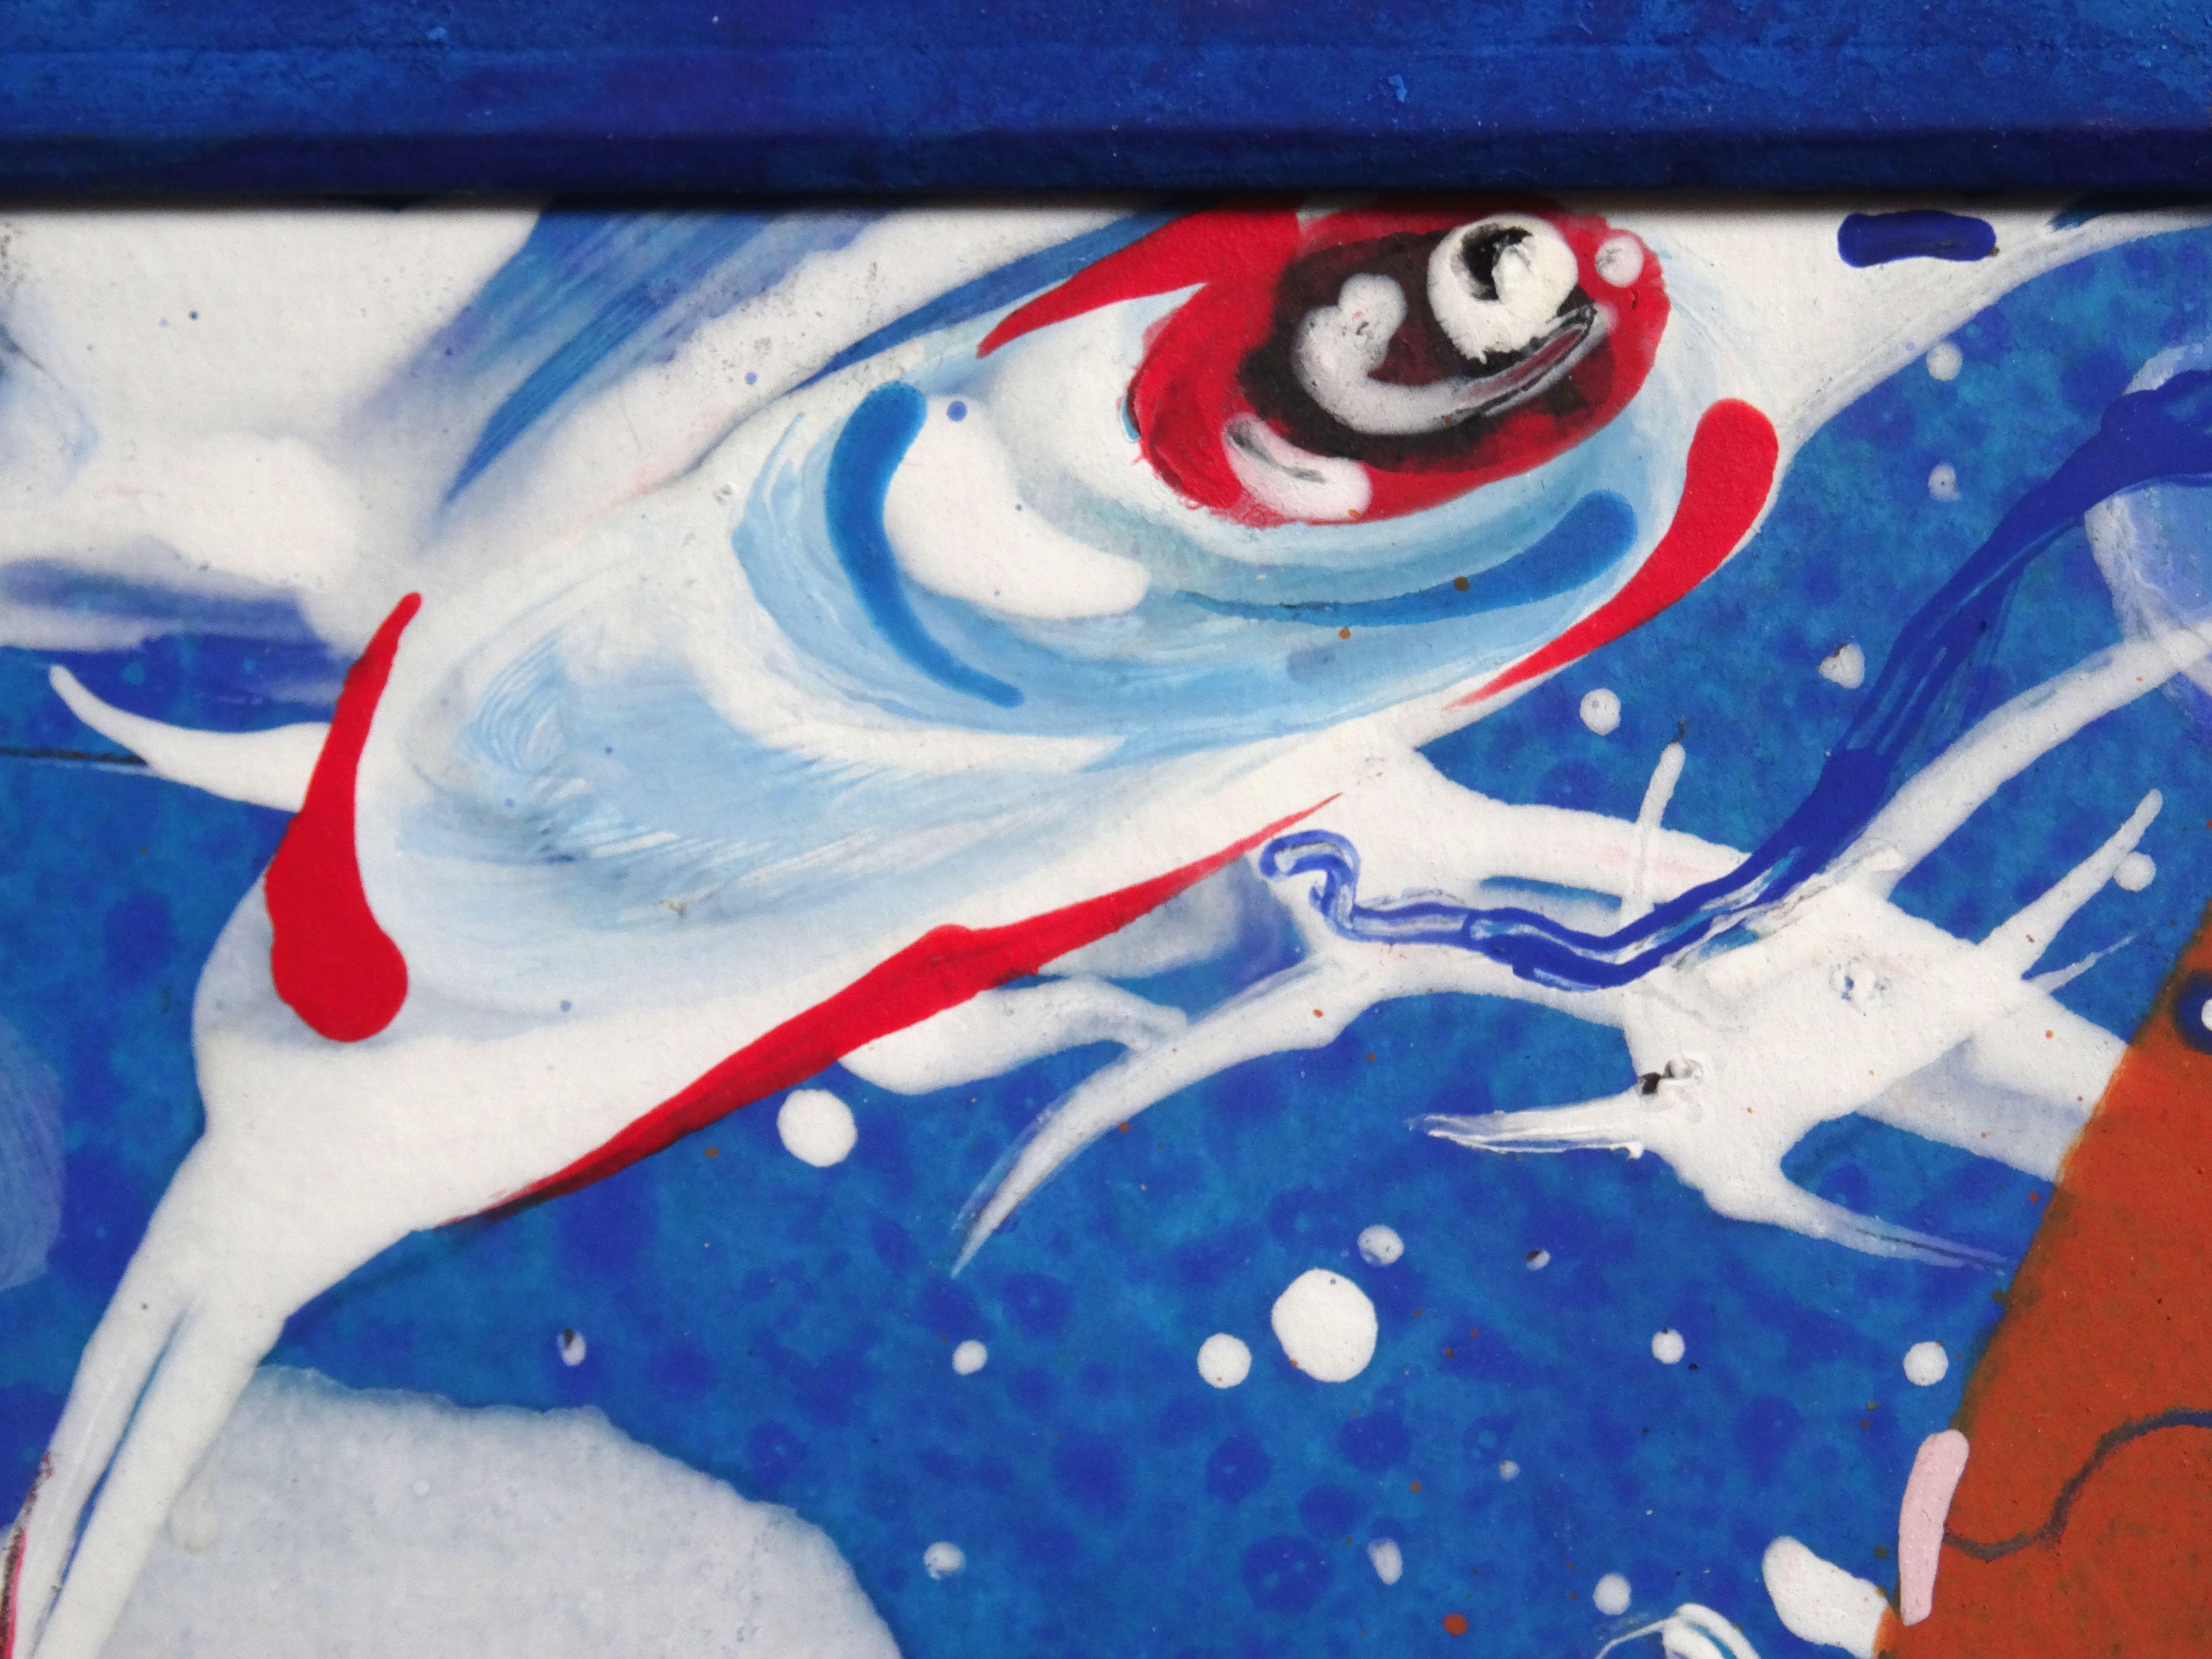 Vers l'avenir. 2016. carton, technique de l'auteur, 21x27 cm
Composition avec des créatures rouges sur le bleu

Ivars Zaikins (1942-2017)

Zaikins Ivars - un artiste. Il est né en 1942. Pendant la période de l'Union soviétique, il a travaillé comme